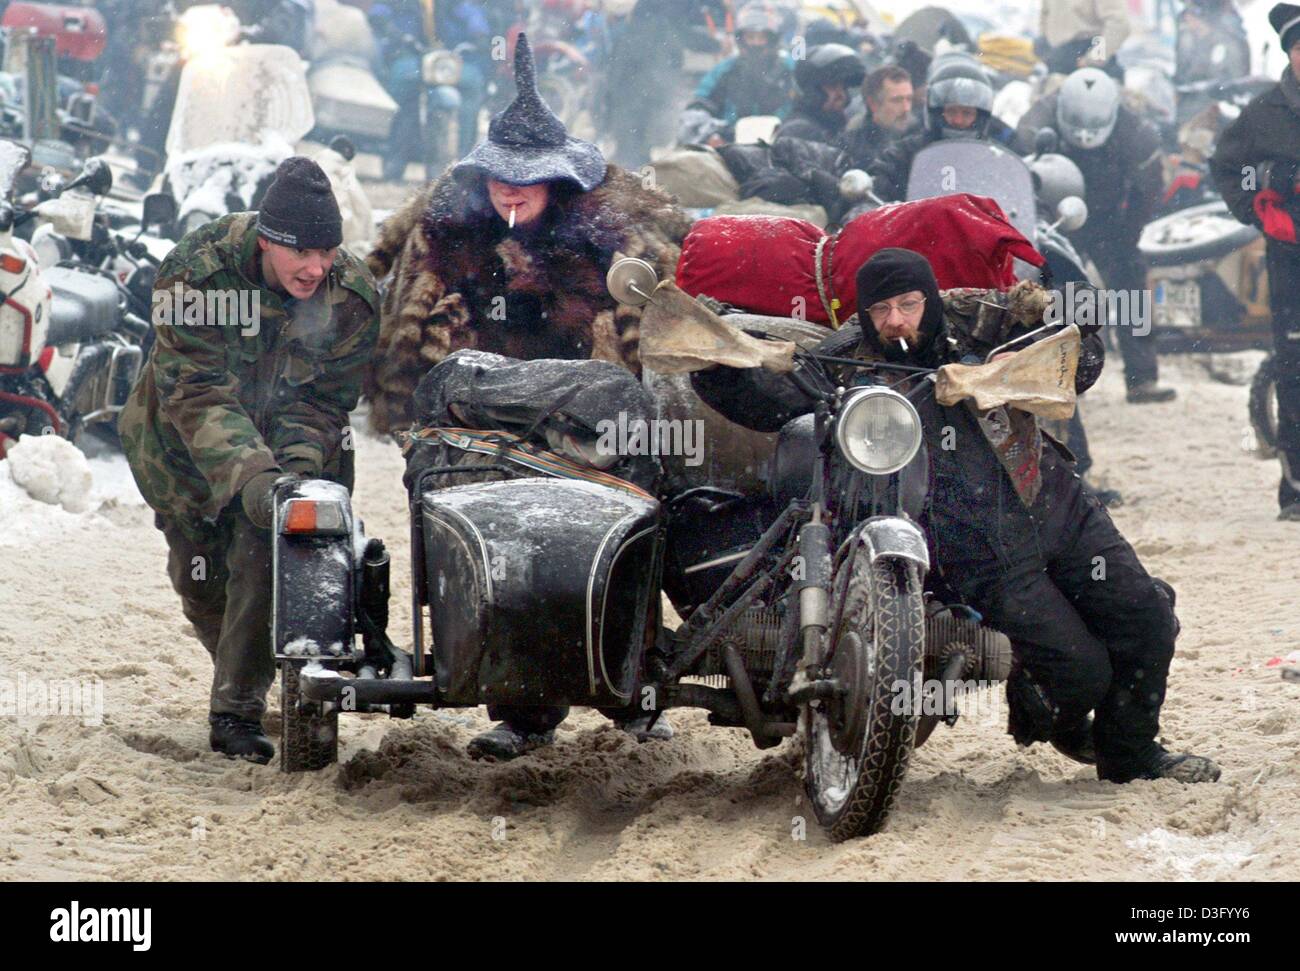 Afp) - trois motards pousser une moto avec side-car à travers le sable  profond à des vététistes Thurmansbang, Allemagne, 2 février 2003. Autour de  moto 3500 fans de divers pays se sont